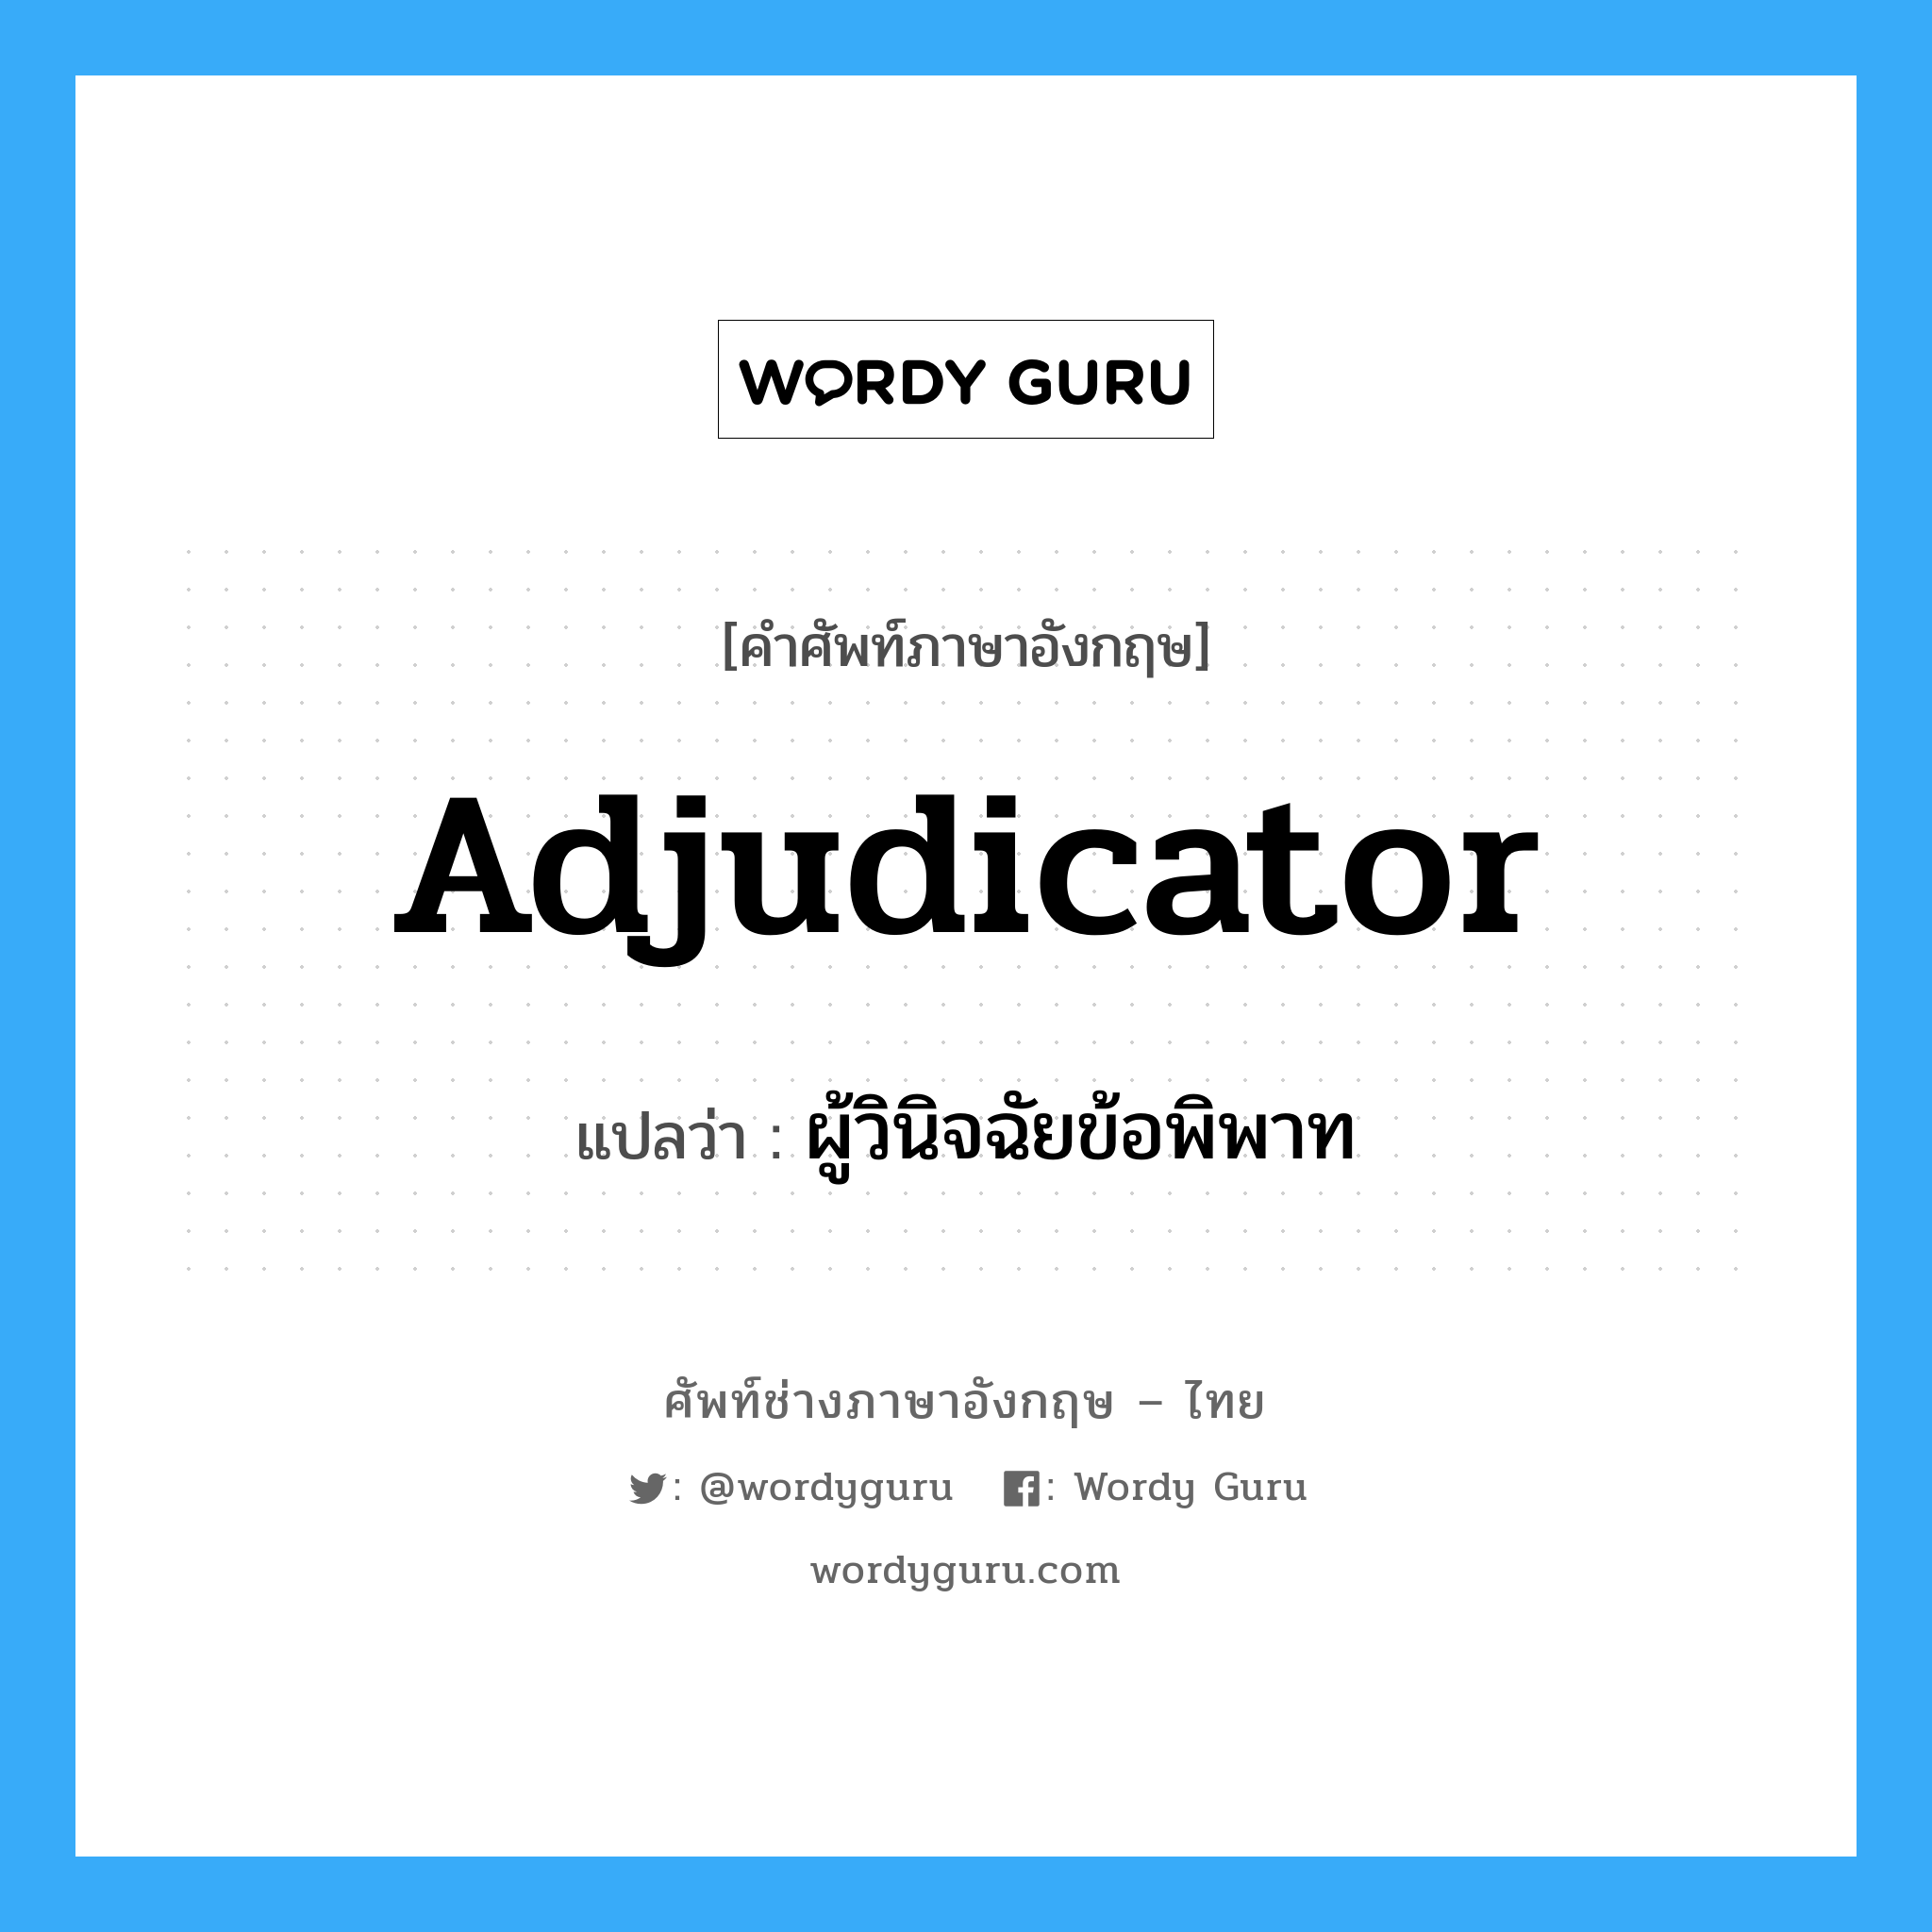 ผู้วินิจฉัยข้อพิพาท ภาษาอังกฤษ?, คำศัพท์ช่างภาษาอังกฤษ - ไทย ผู้วินิจฉัยข้อพิพาท คำศัพท์ภาษาอังกฤษ ผู้วินิจฉัยข้อพิพาท แปลว่า Adjudicator